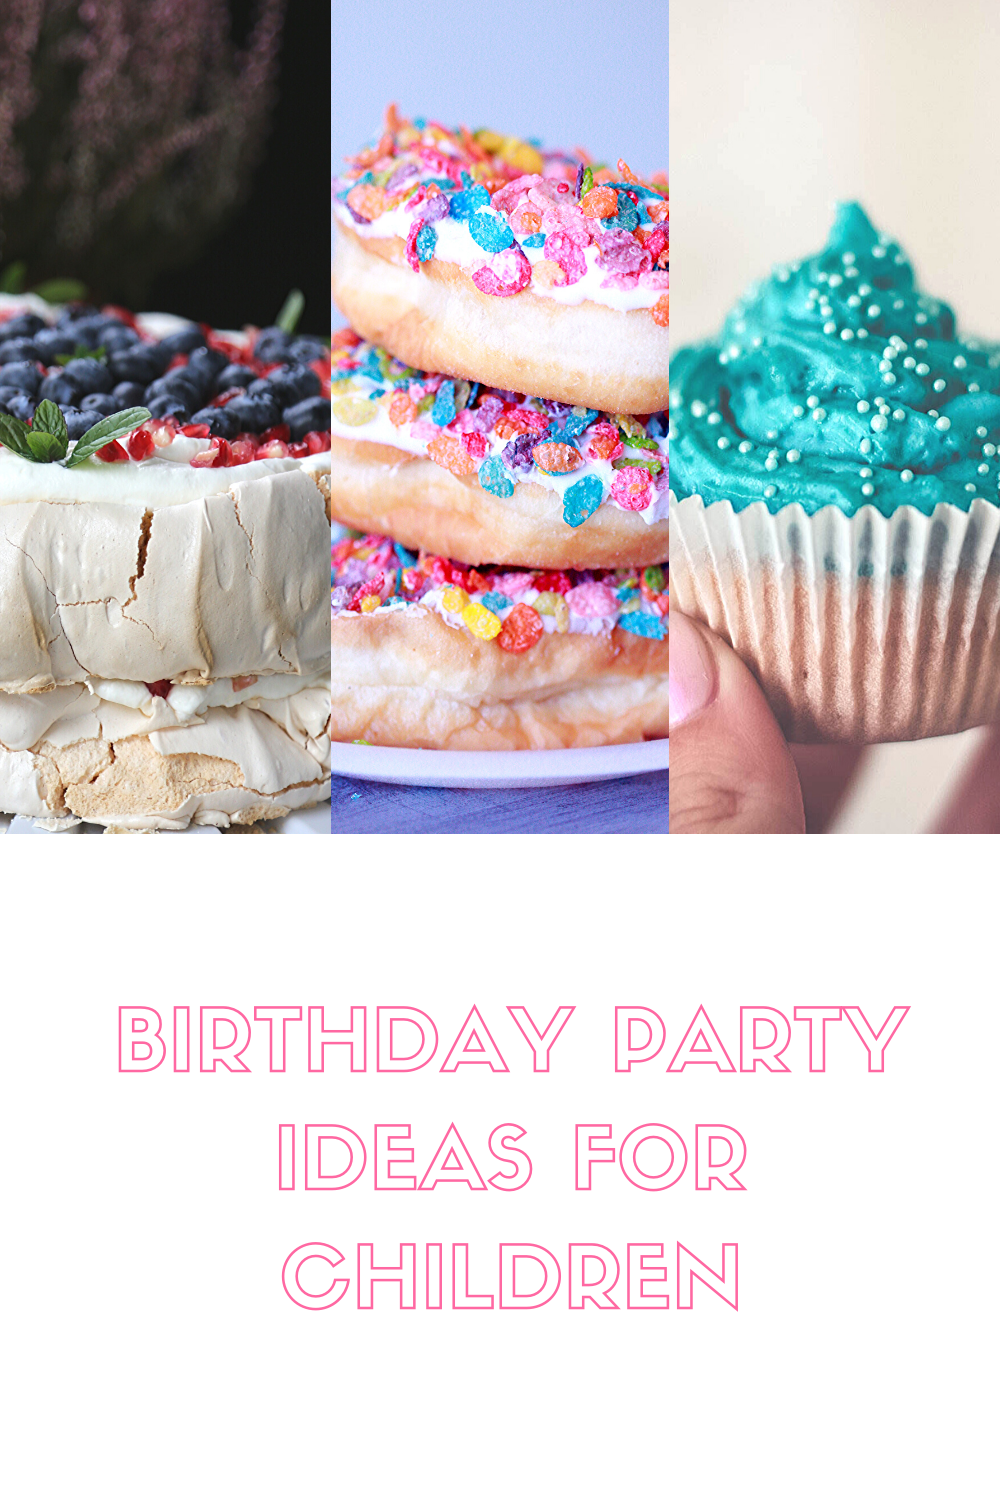 Birthday party ideas for children